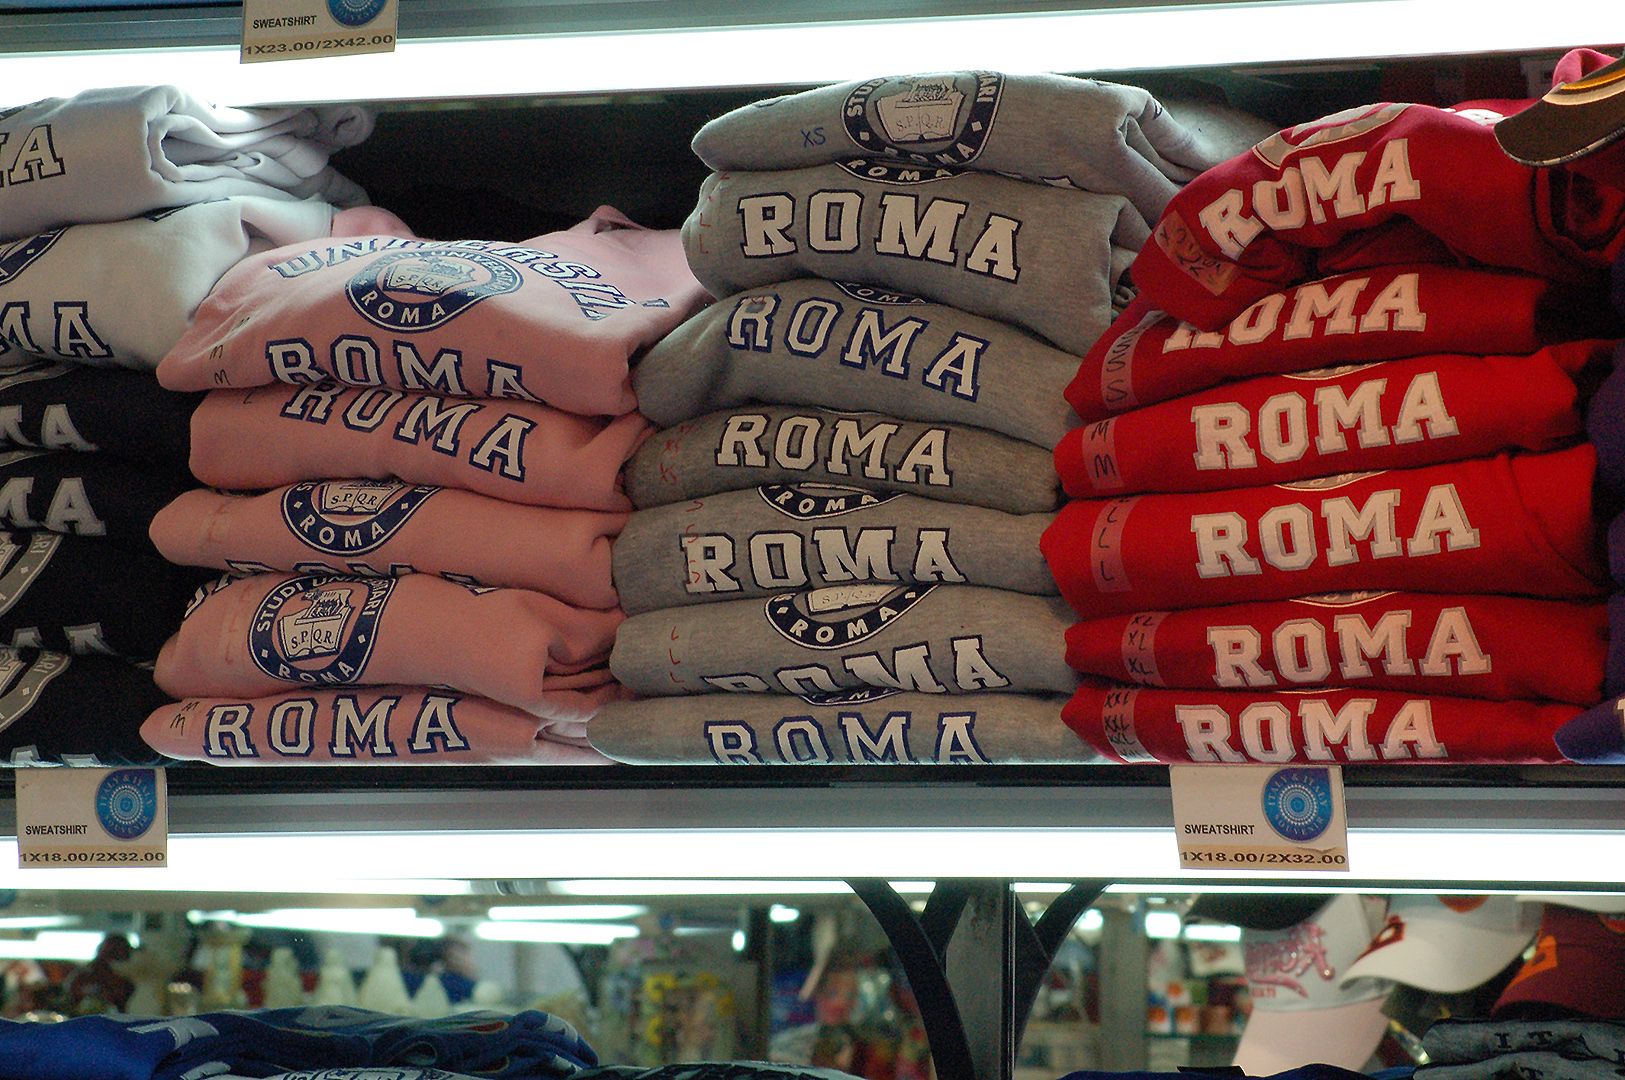 souvenirwinkel Rome, souvenirshop Rome